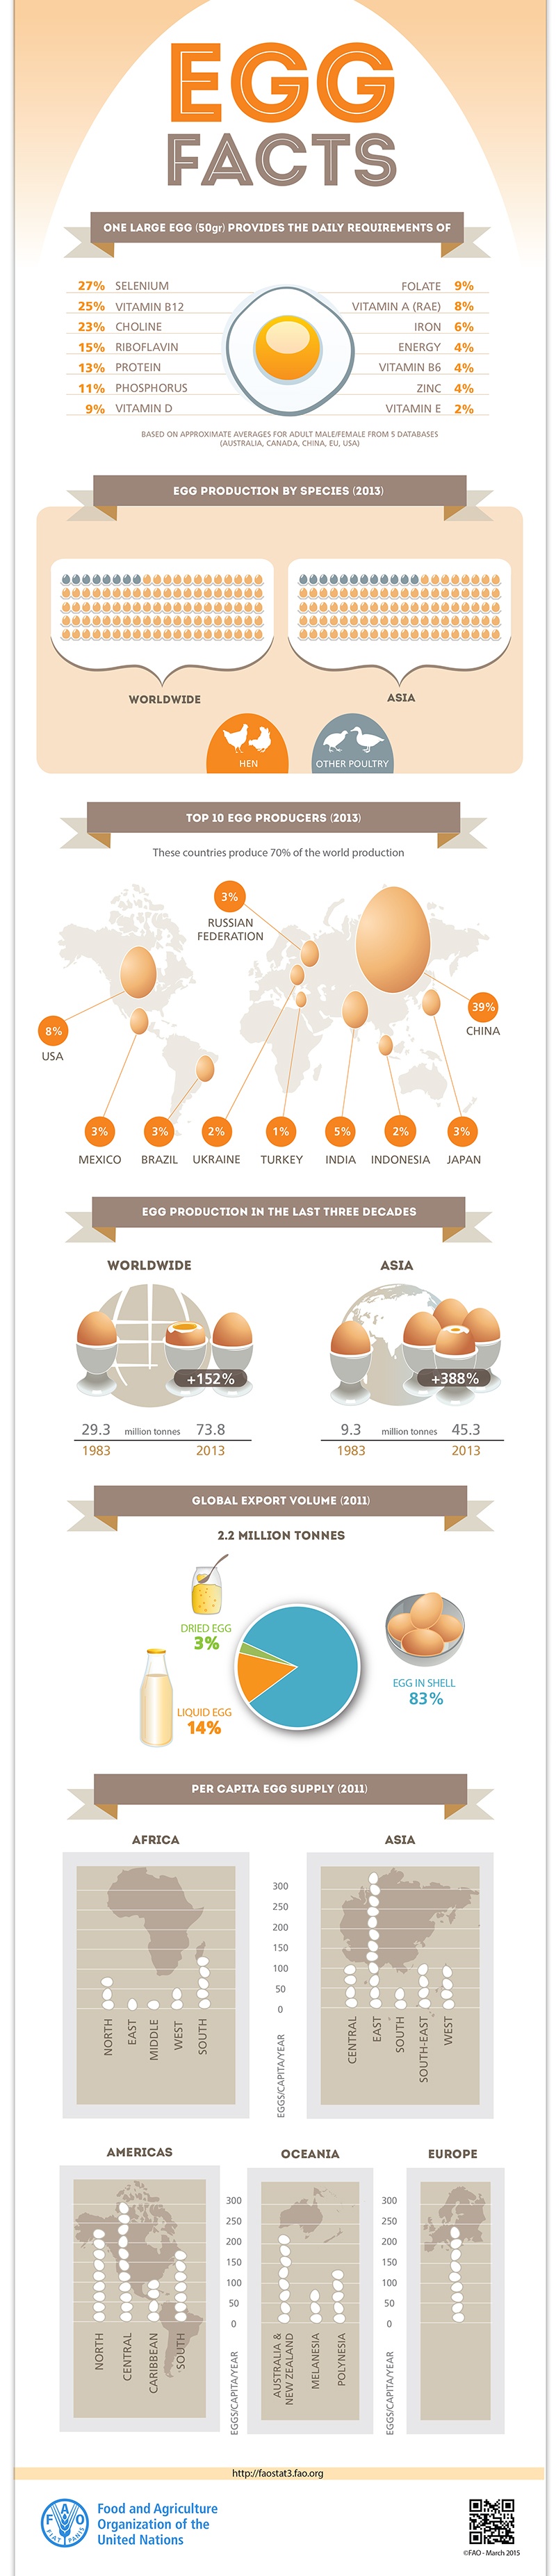 FAO-Infographic-EGG-facts_EN